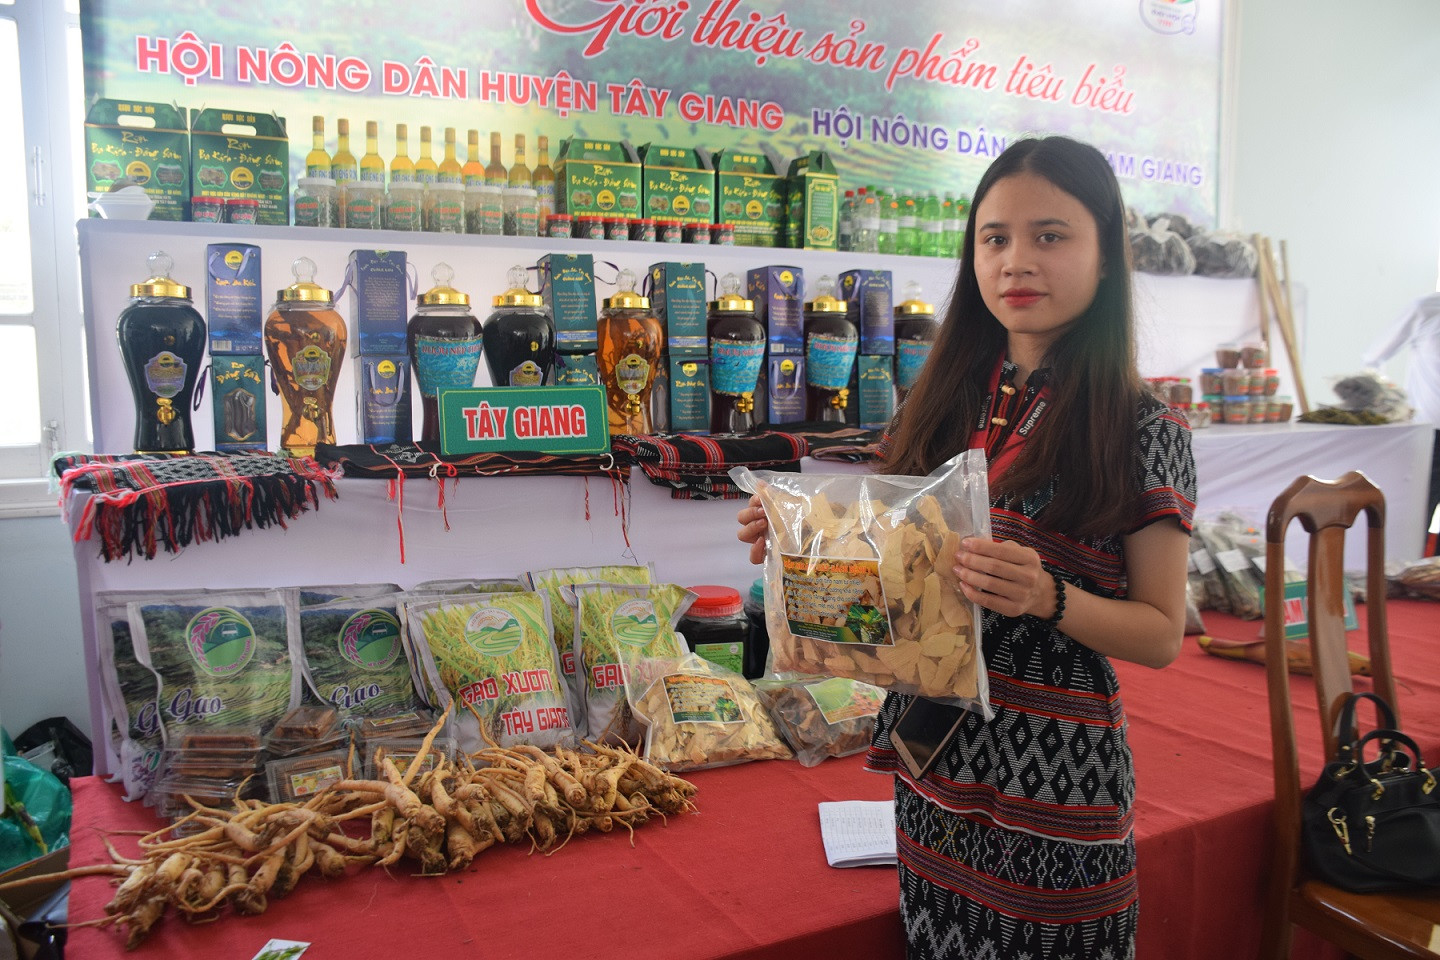 Hội Nông dân huyện Tây Giang giới thiệu một số sản phẩm tiêu biểu của đơn vị mình 